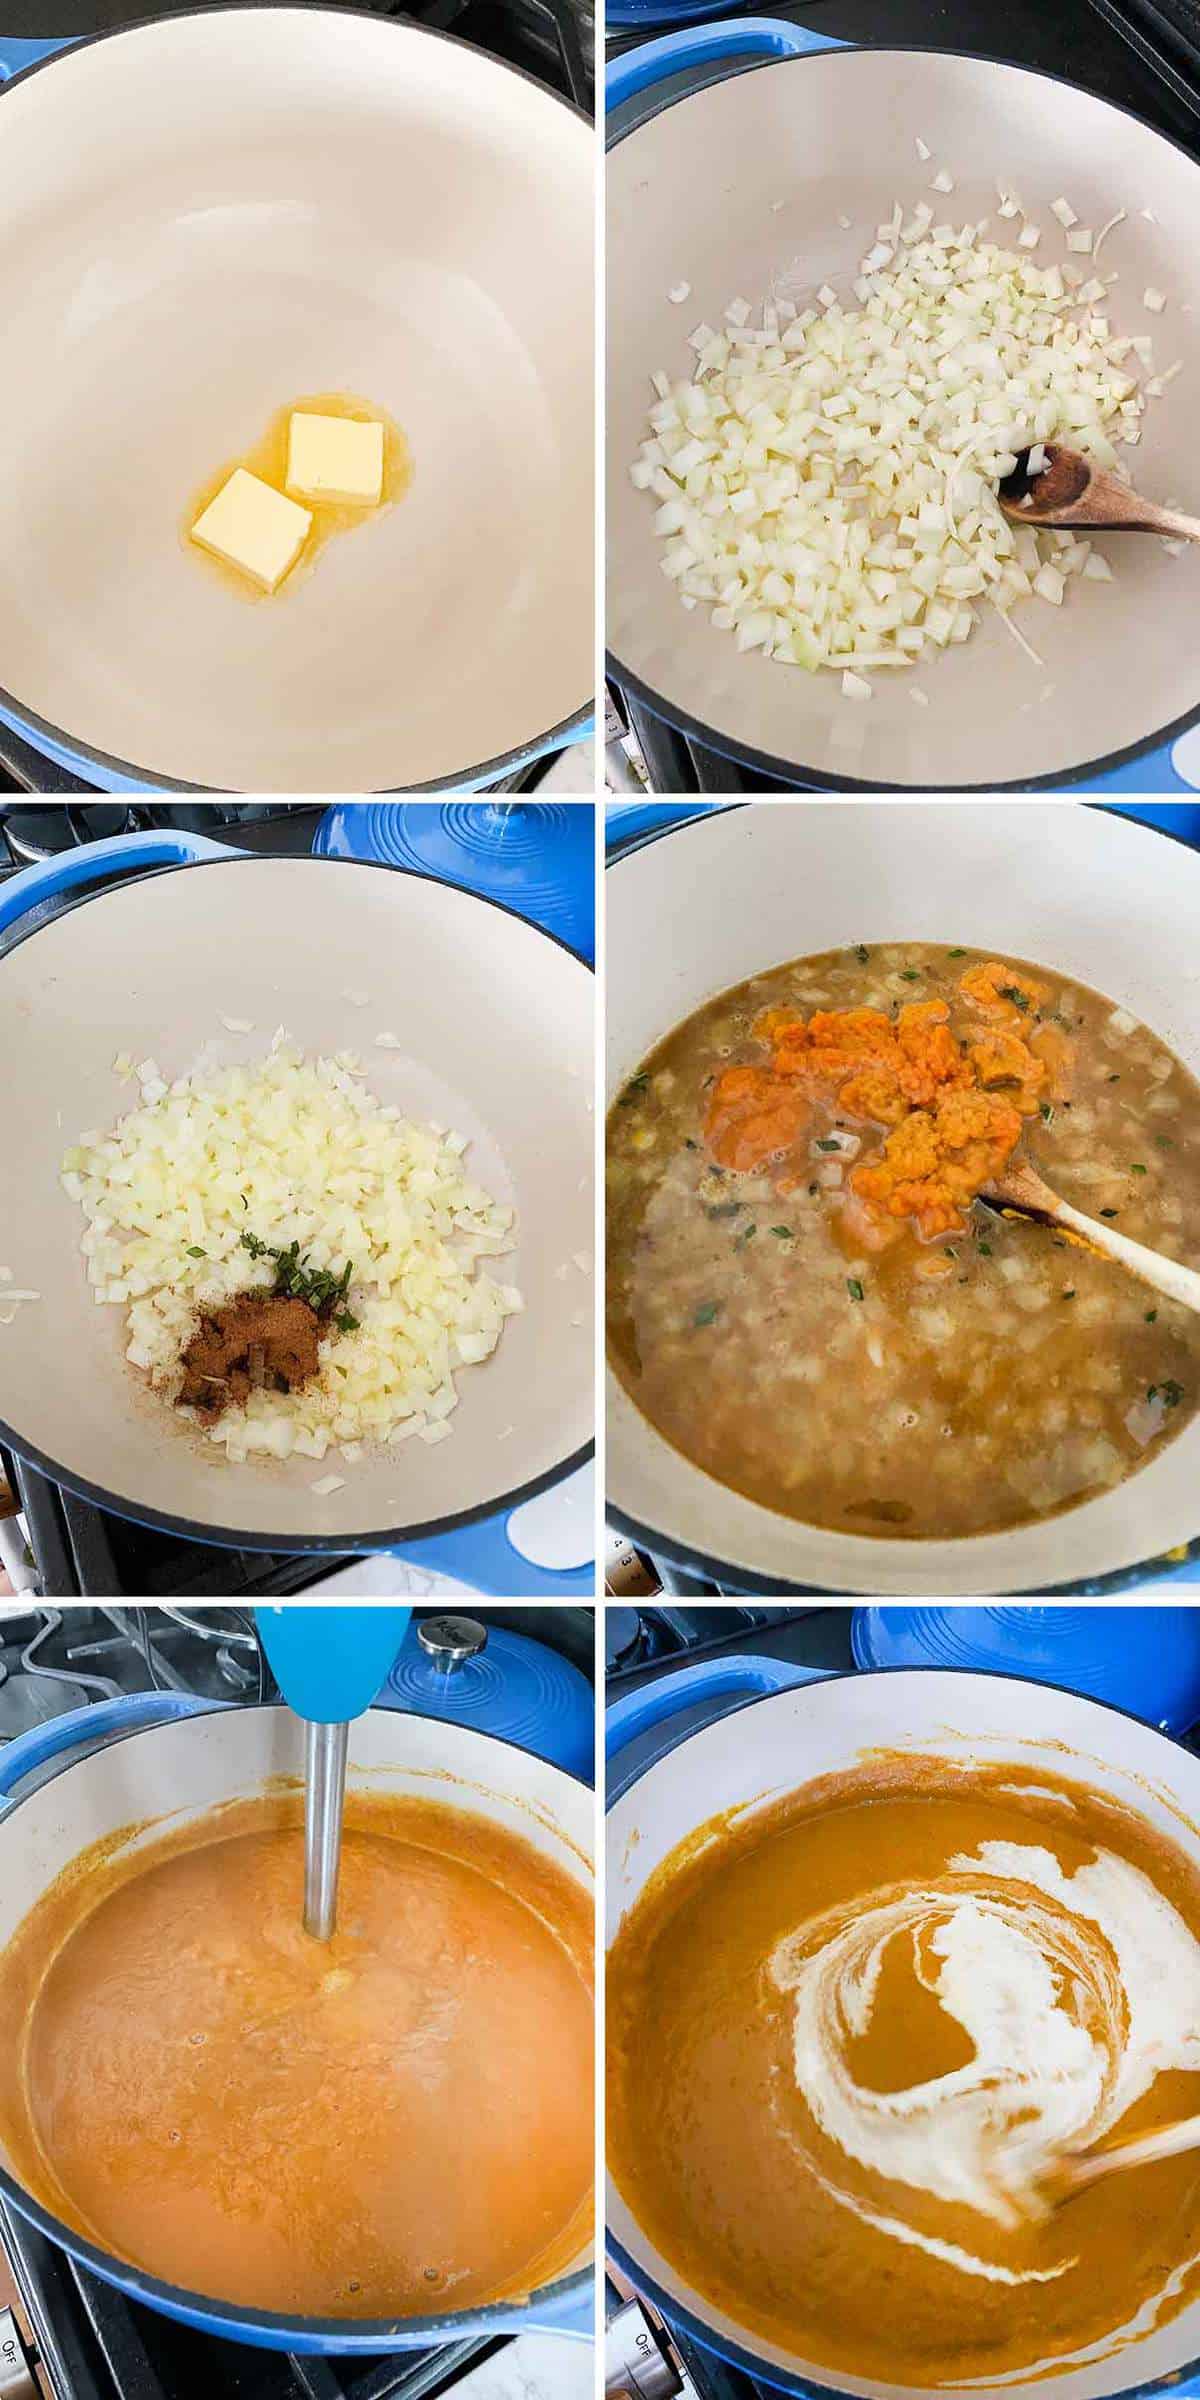 کلاژی که نشان می دهد چگونه سوپ کدو تنبل در یک اجاق هلندی درست می شود.